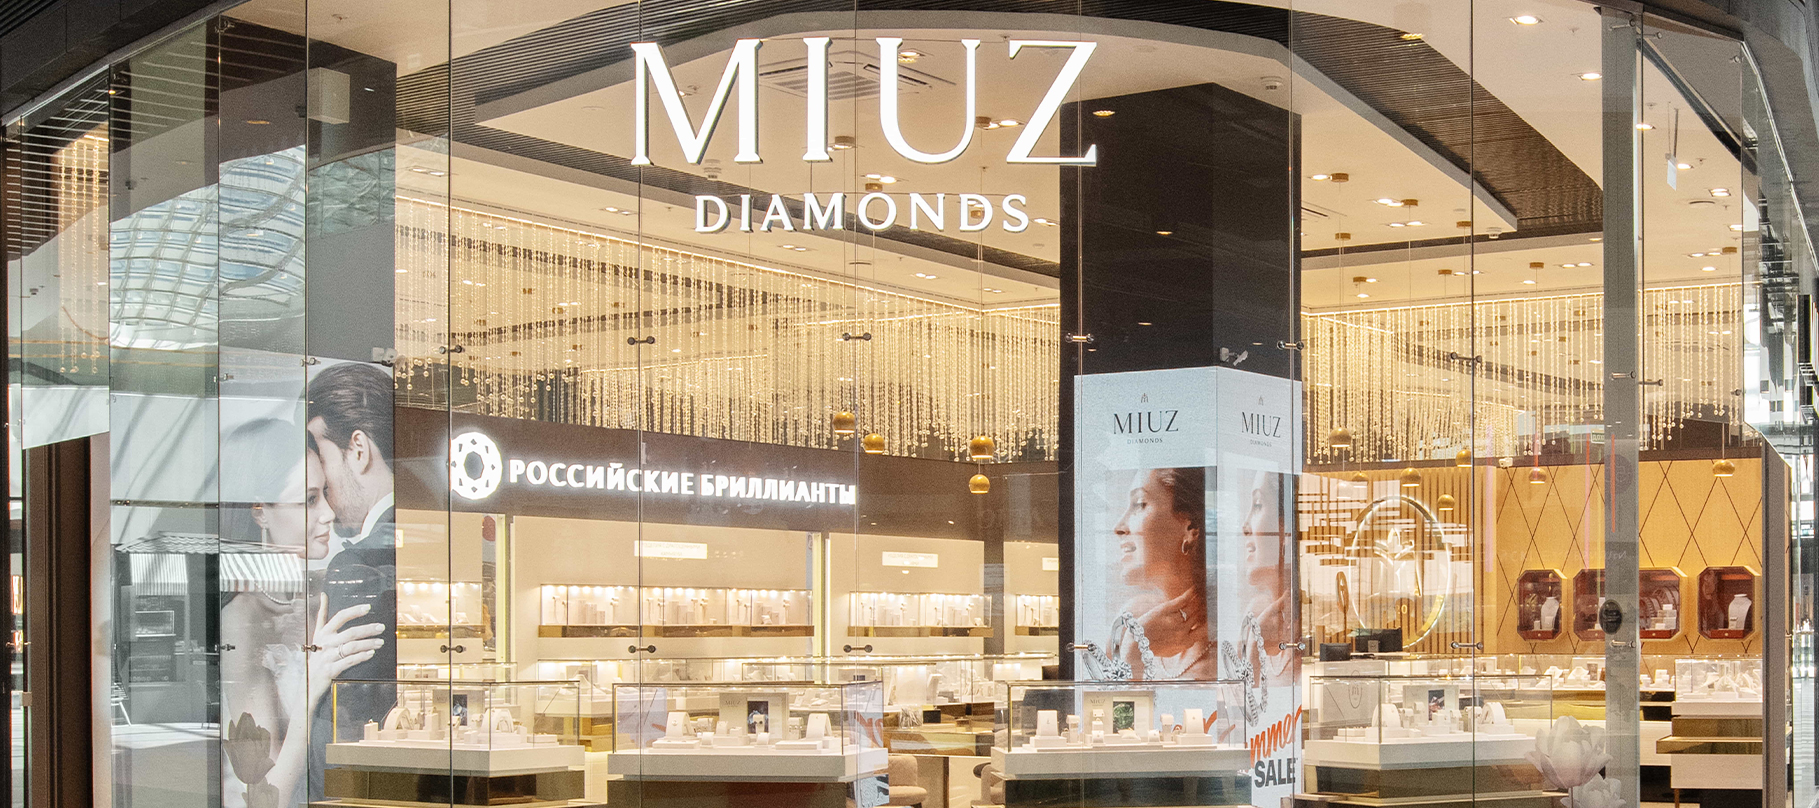 MIUZ Diamonds Саларис в городе Москва – полная информация о магазине